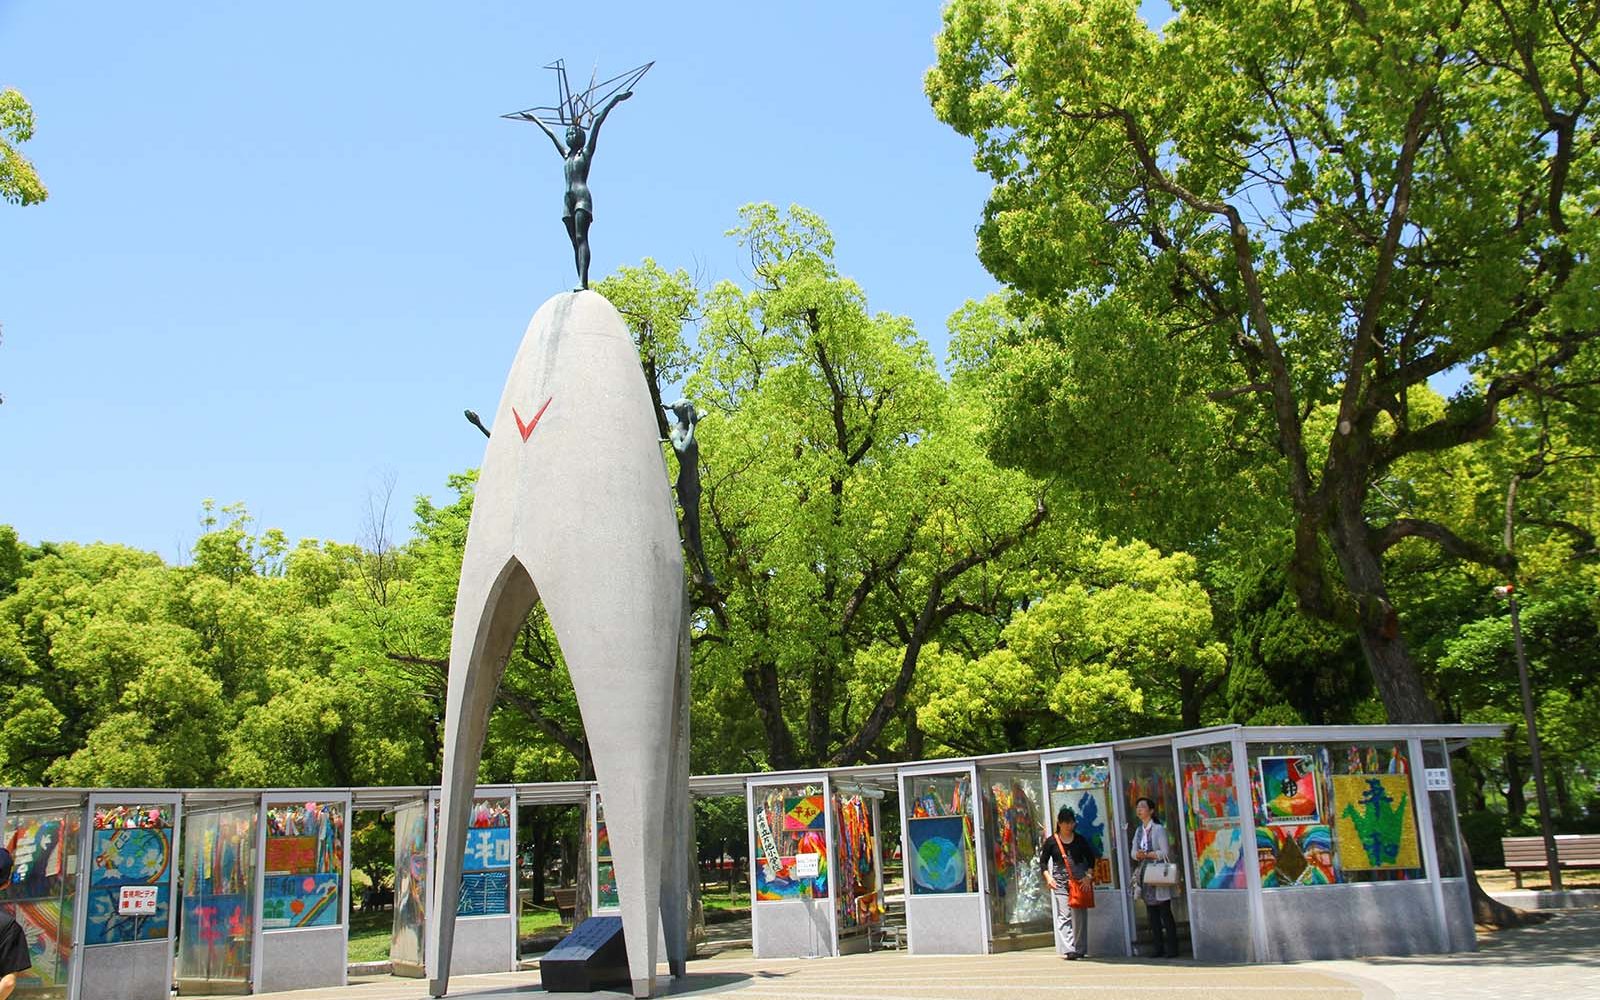 Japan public art, Childrens peace monument